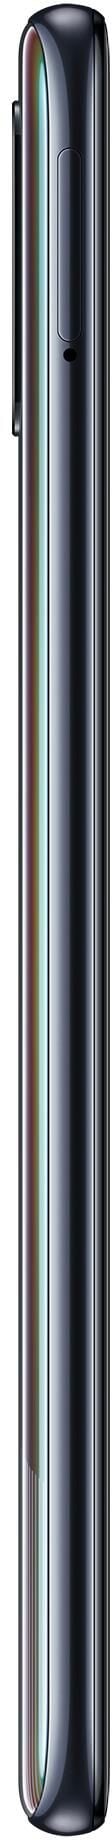 Samsung Galaxy A51 64GB_hor Black